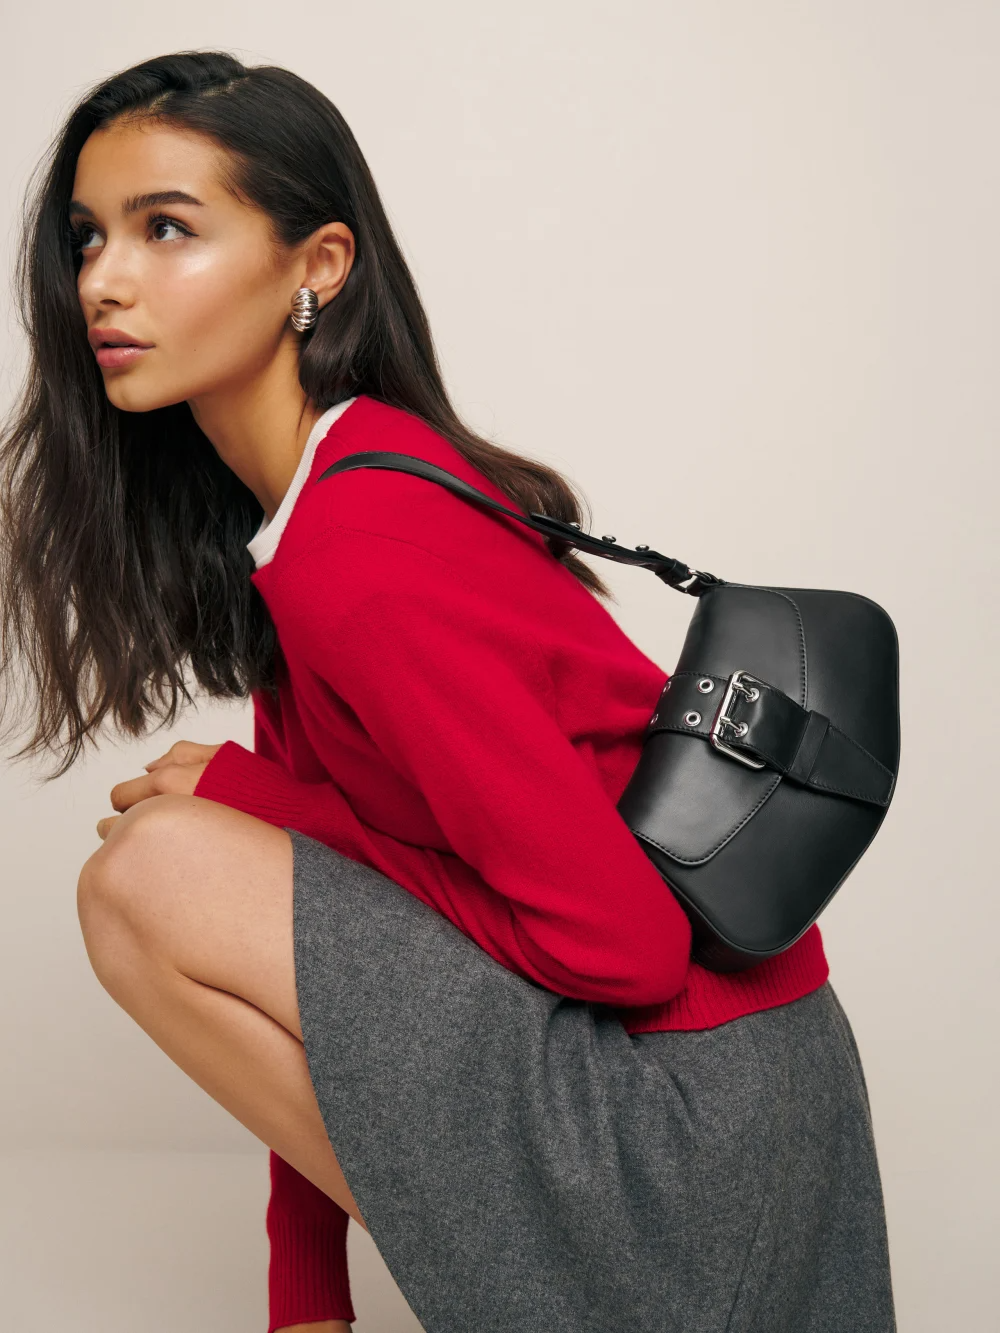 cuiab Shoulder Bag, Shoulder Bag for Women, Black Purse, Black Shoulder  Bag, Vintage Shoulder Bag(Olive Black): Handbags: Amazon.com